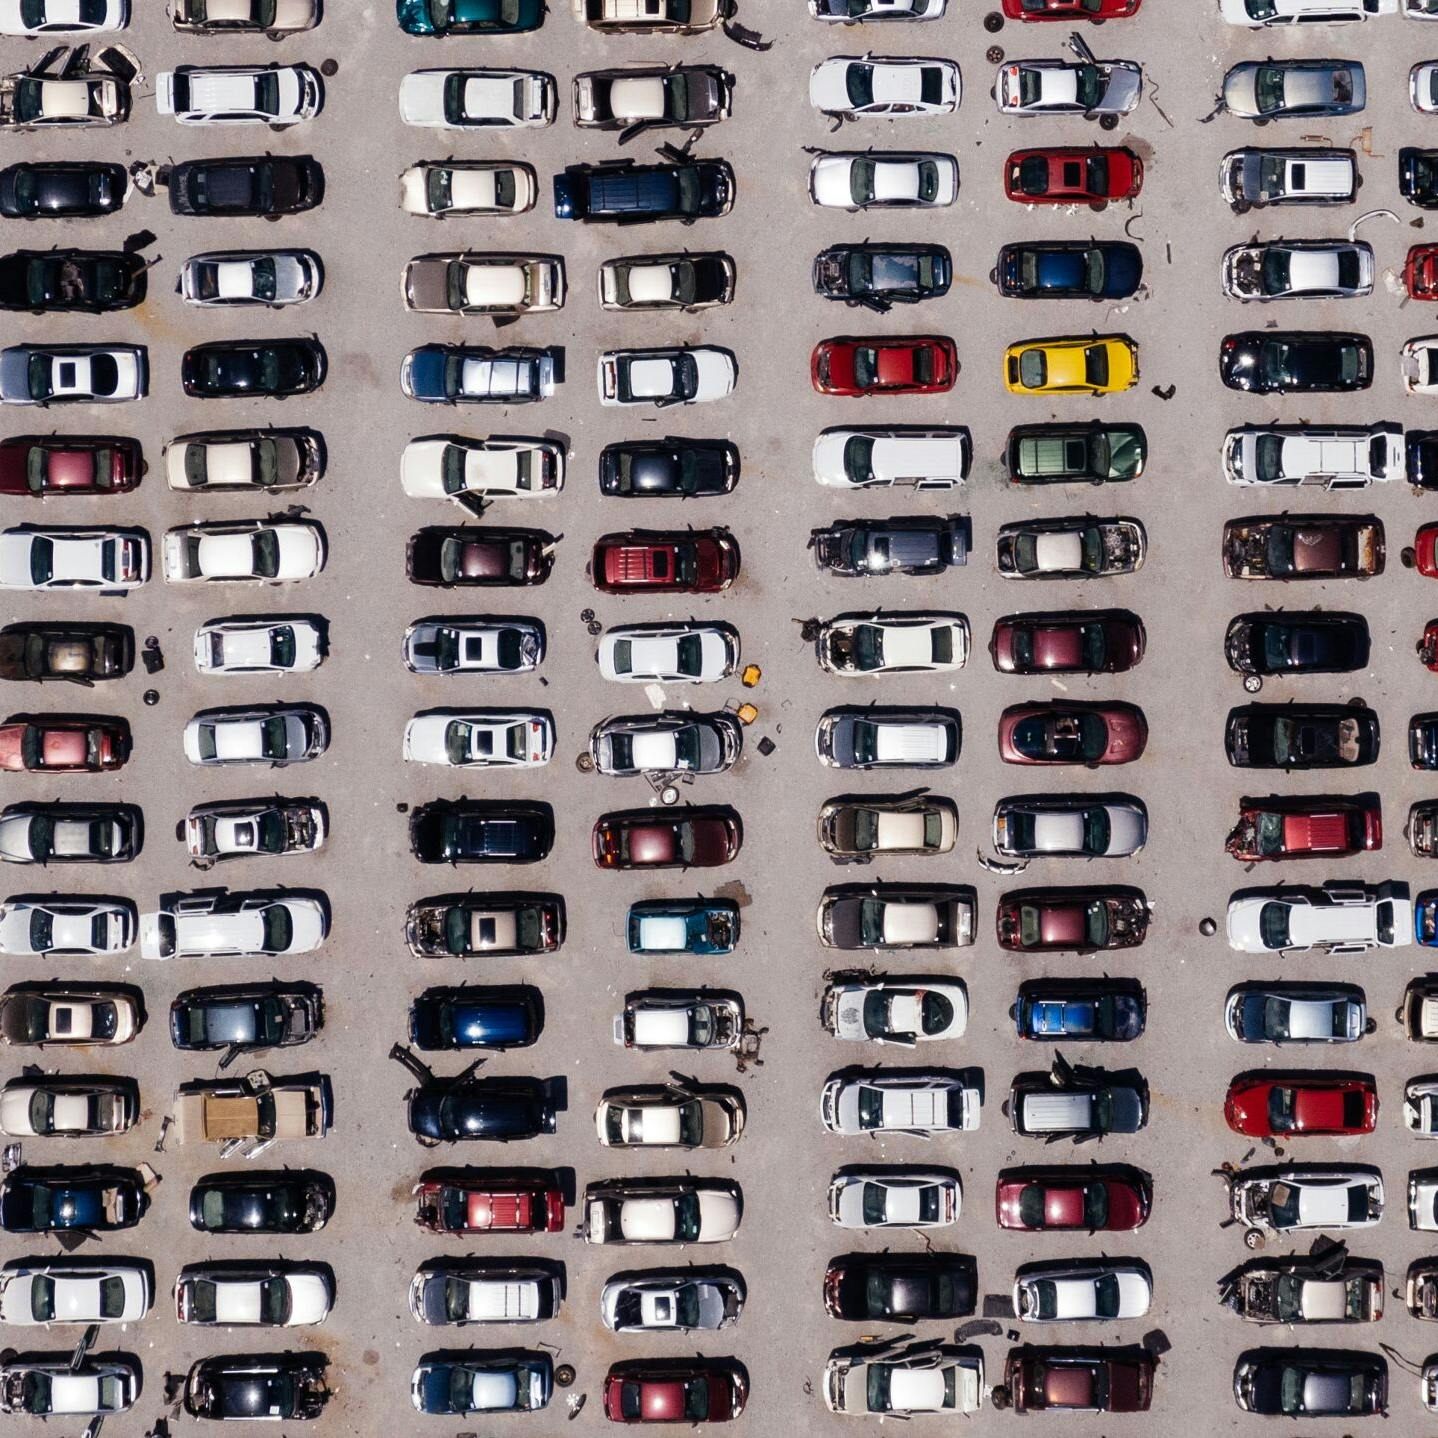 'In 2033 10 miljoen auto's in Nederland'